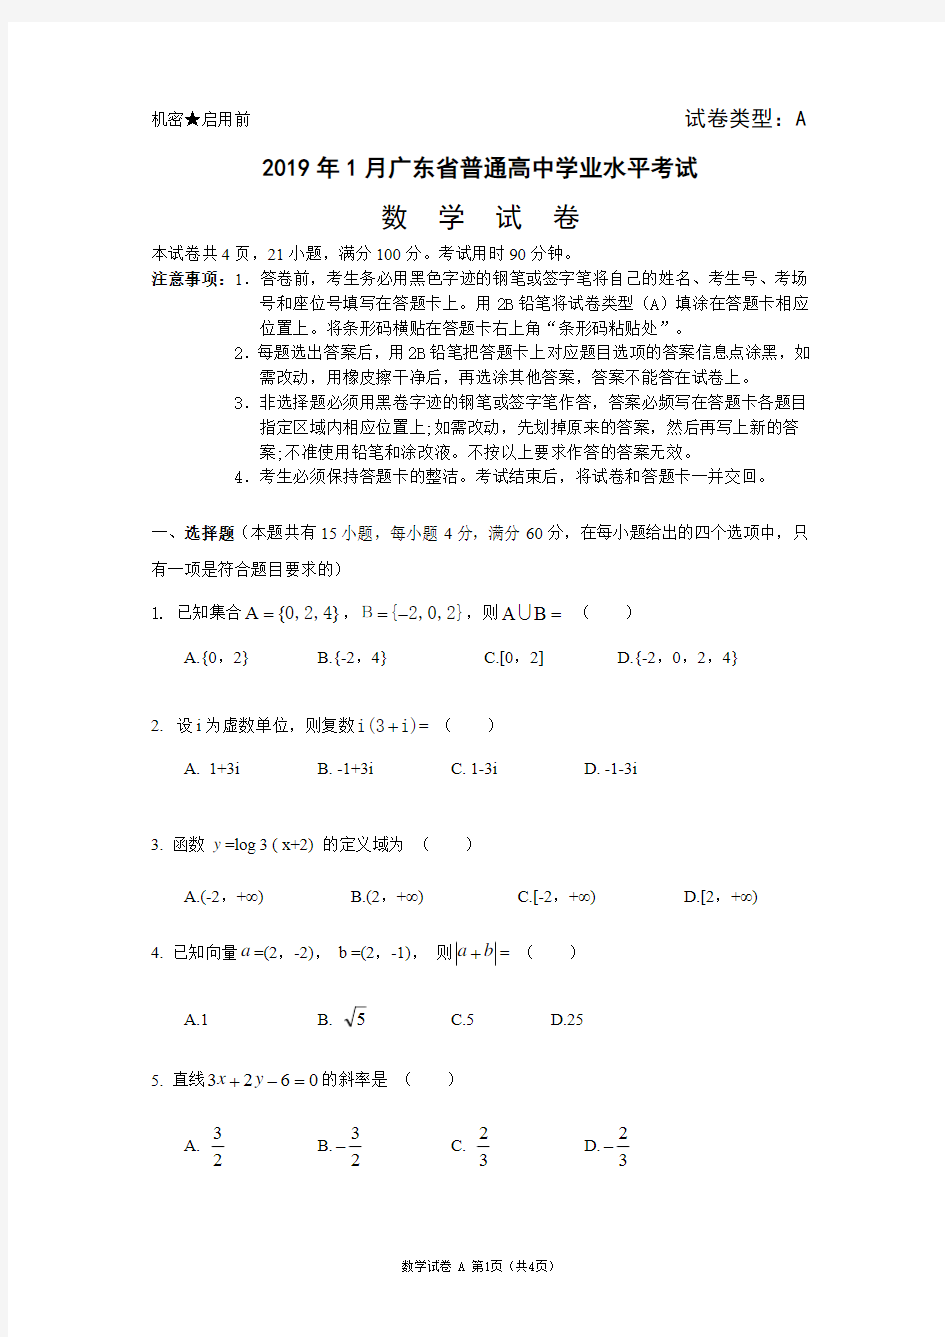 【数学】2019年广东省普通高中学业水平考试真题